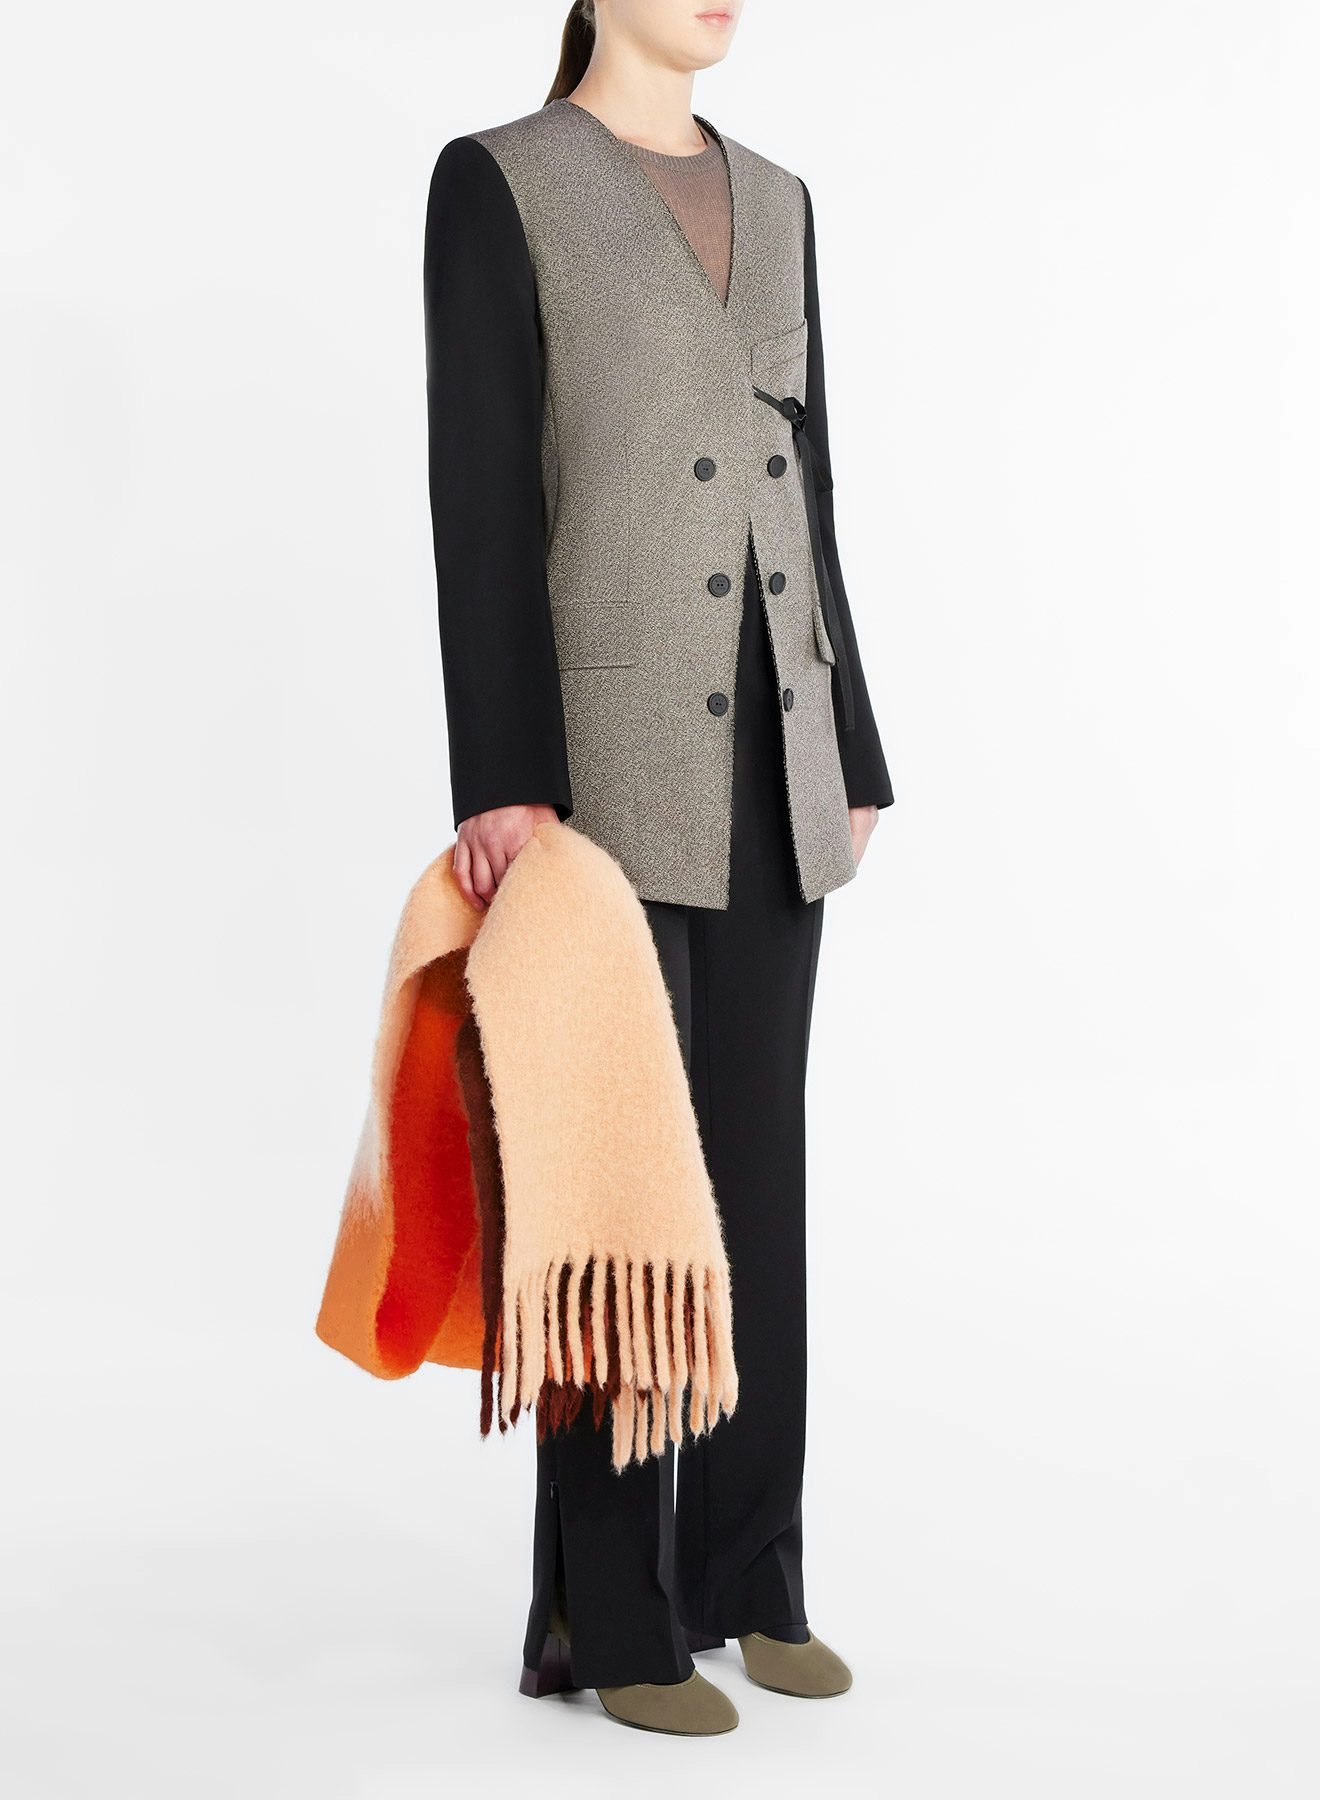 Veste en laine mouchetée marron et blanc - Nina Ricci